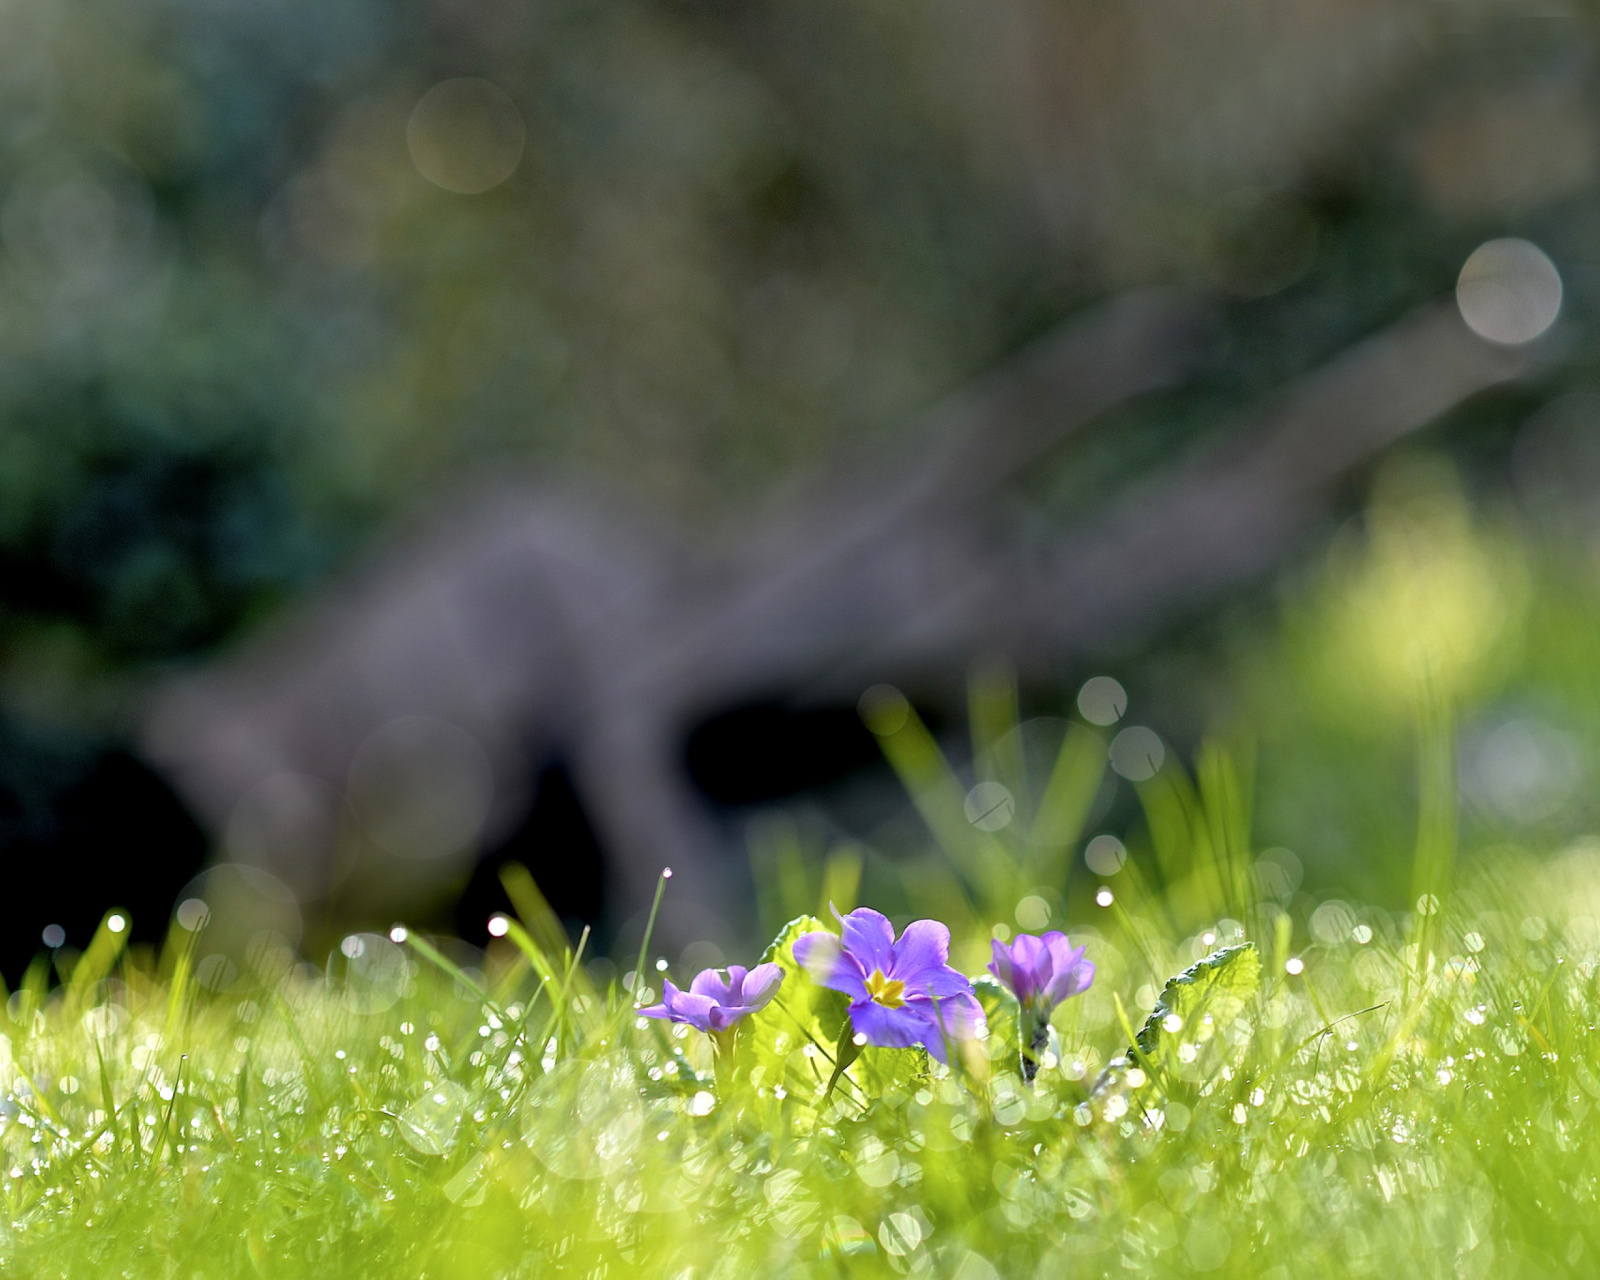 Обои Grass and lilac flower 1600x1280